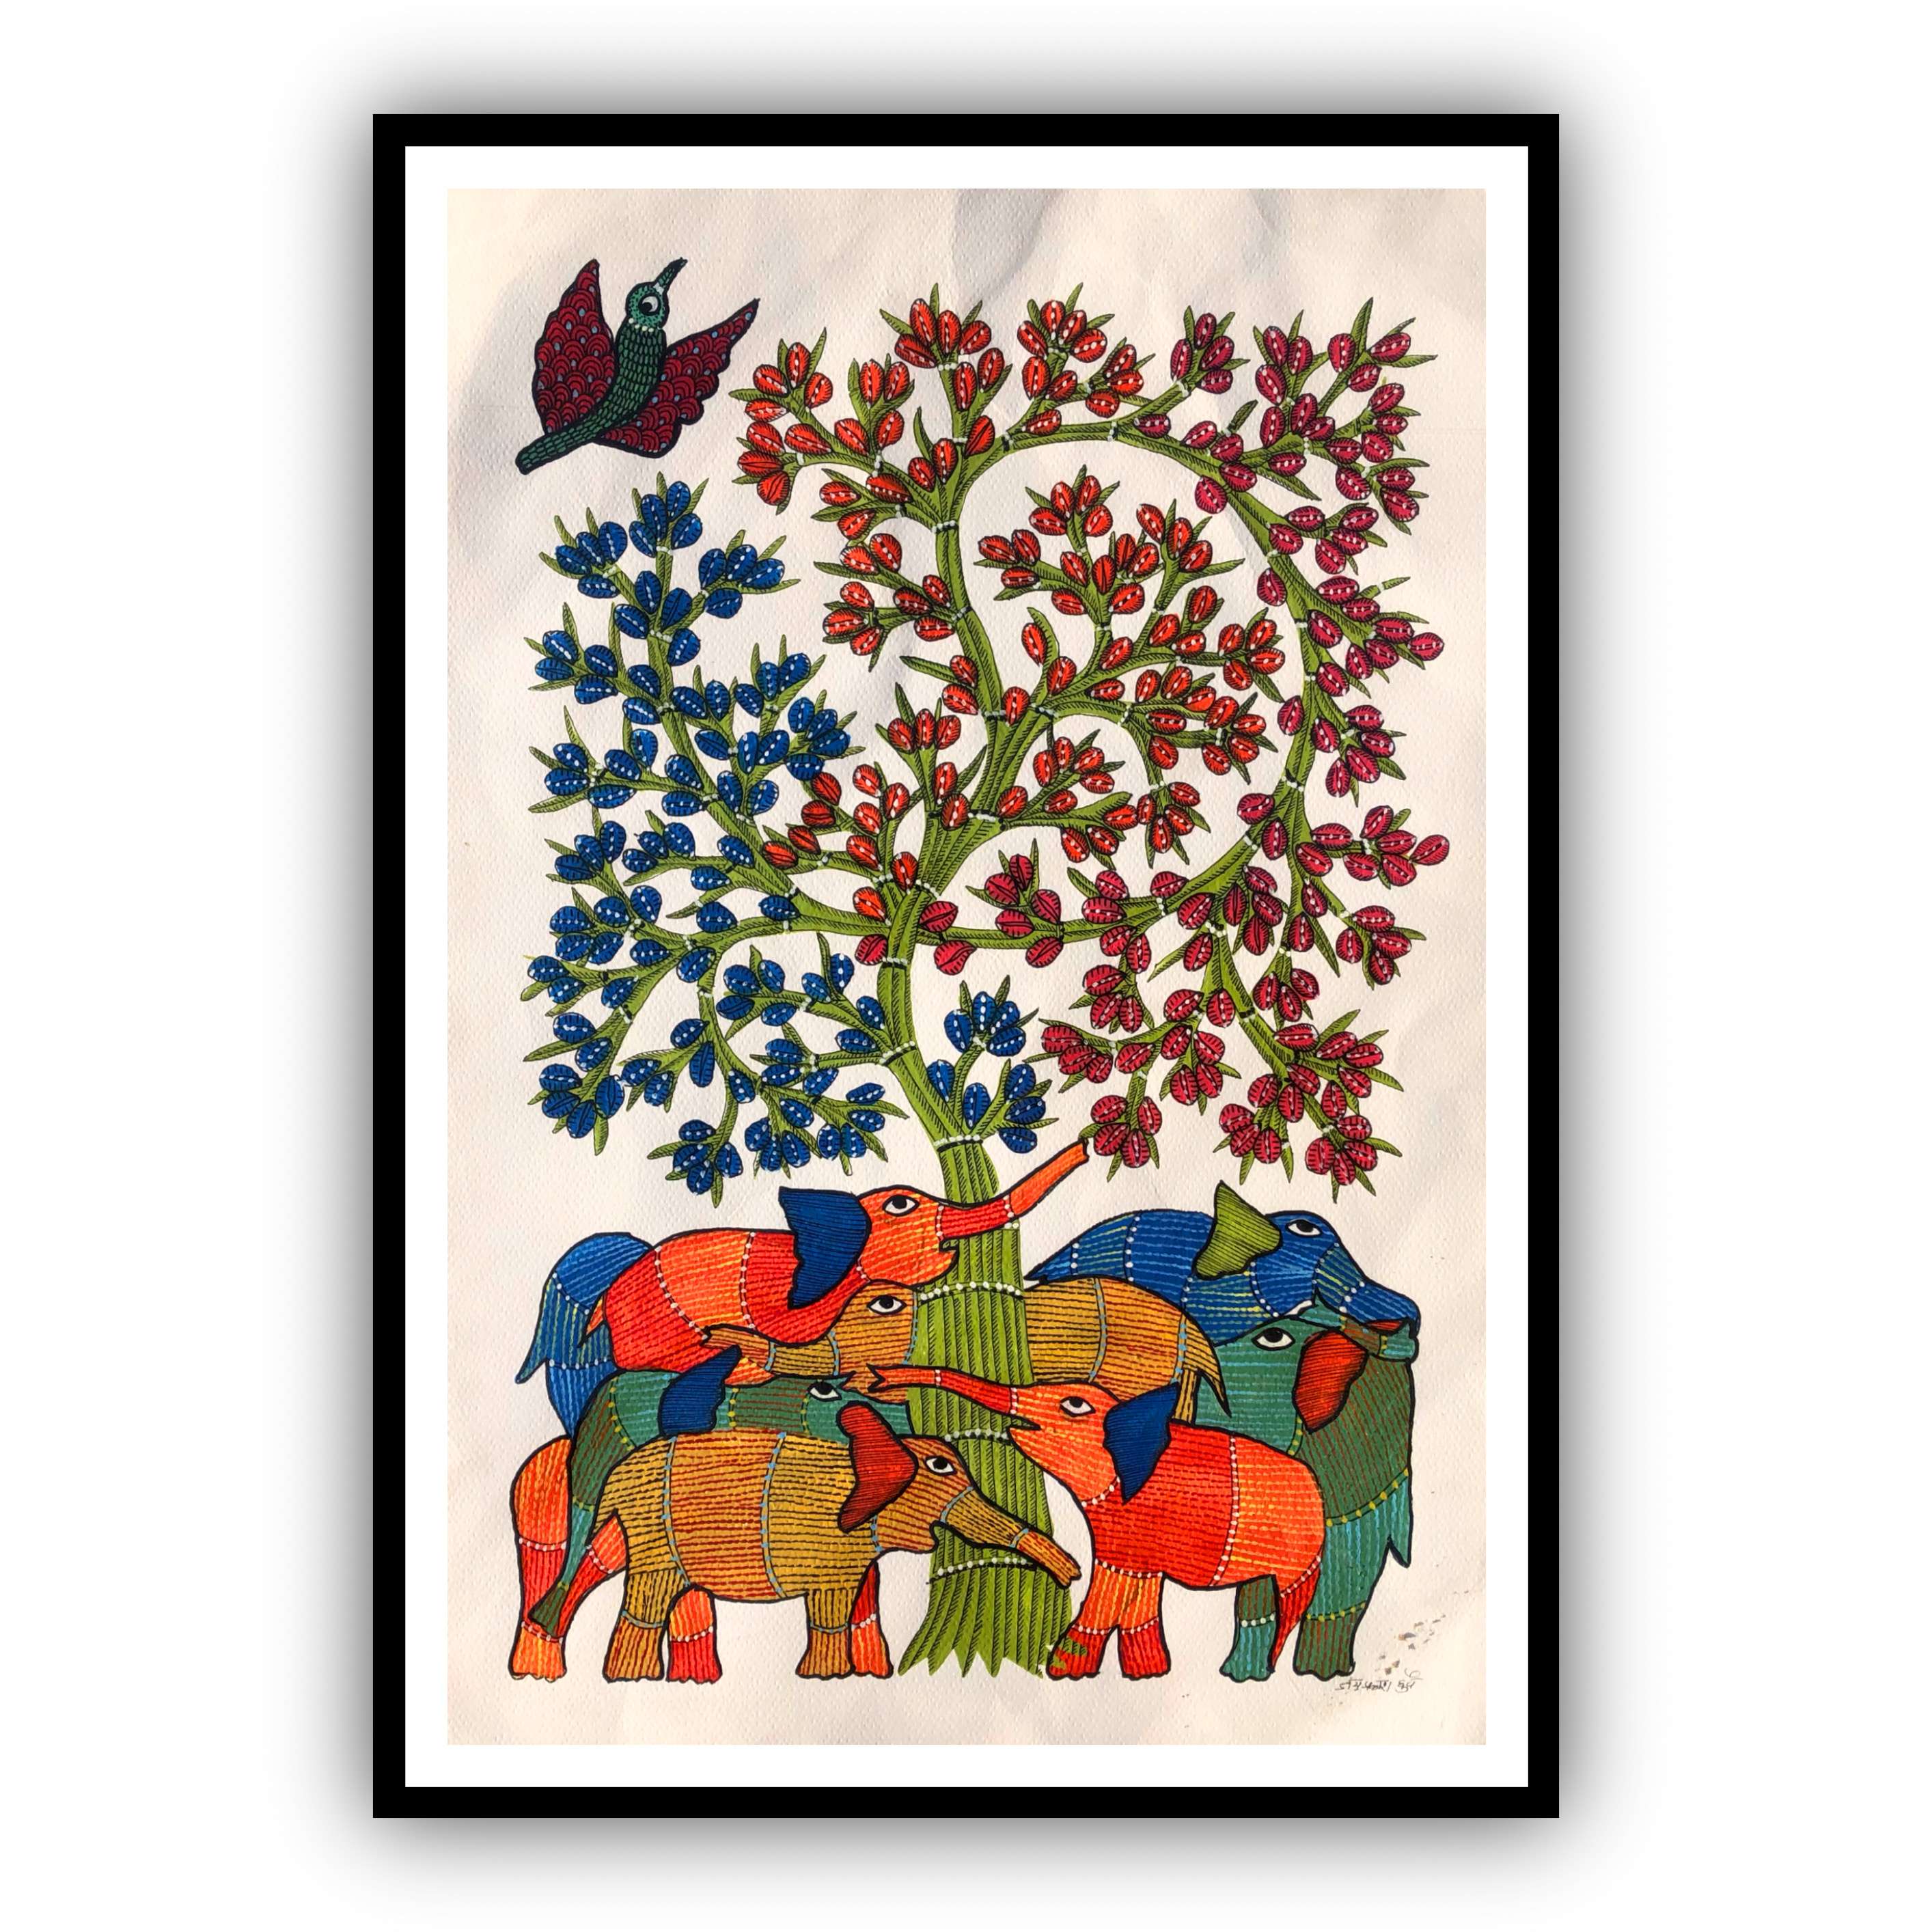 Framed Handmade Gond Art Painting of Elephant Family & Tree for Home & Office Wall Art Decor